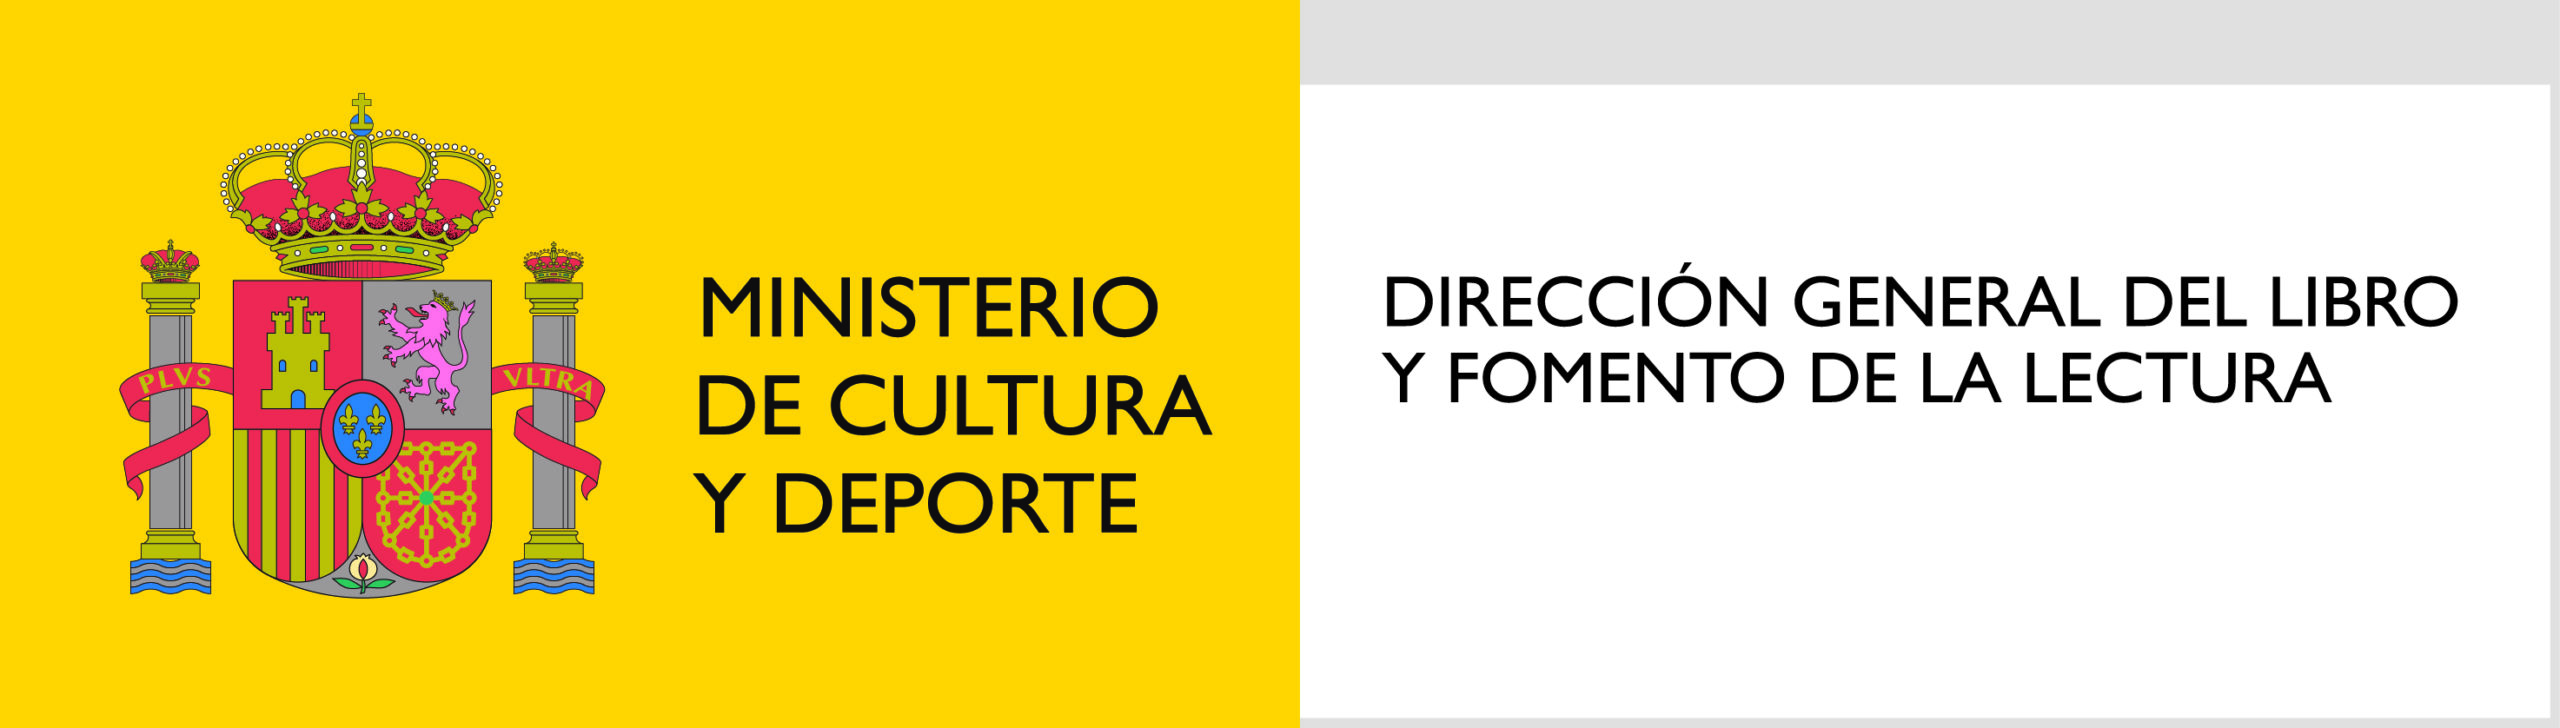 logo Ministerio de Cultura Dirección general del Libro